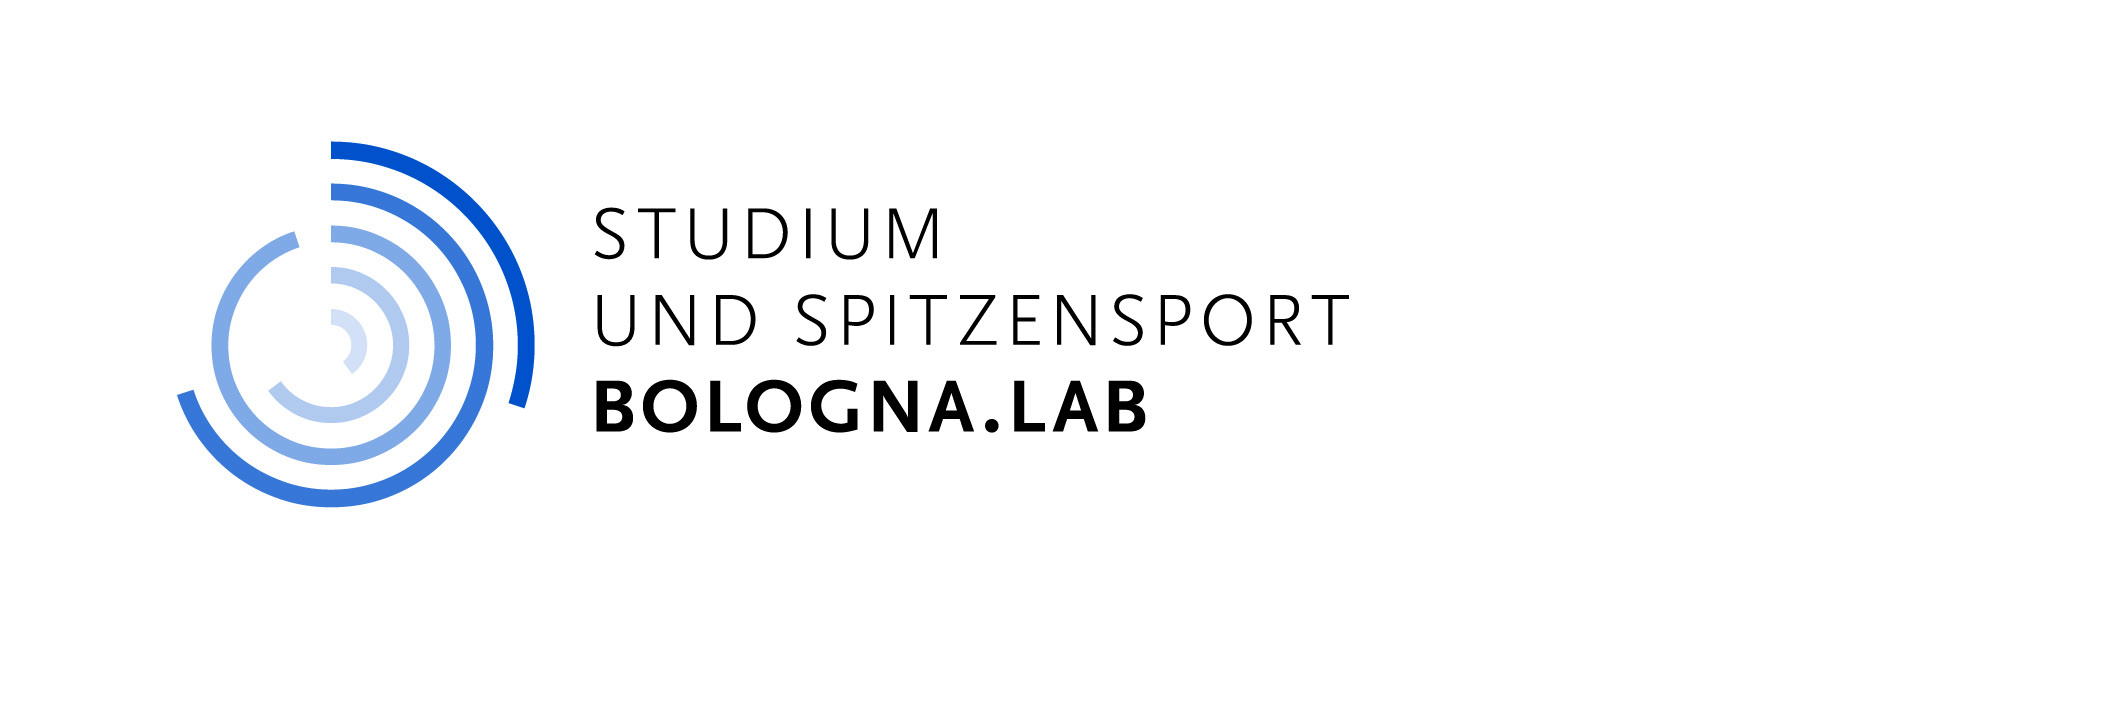 Logo bologna.lab Studium und Spitzensport klein